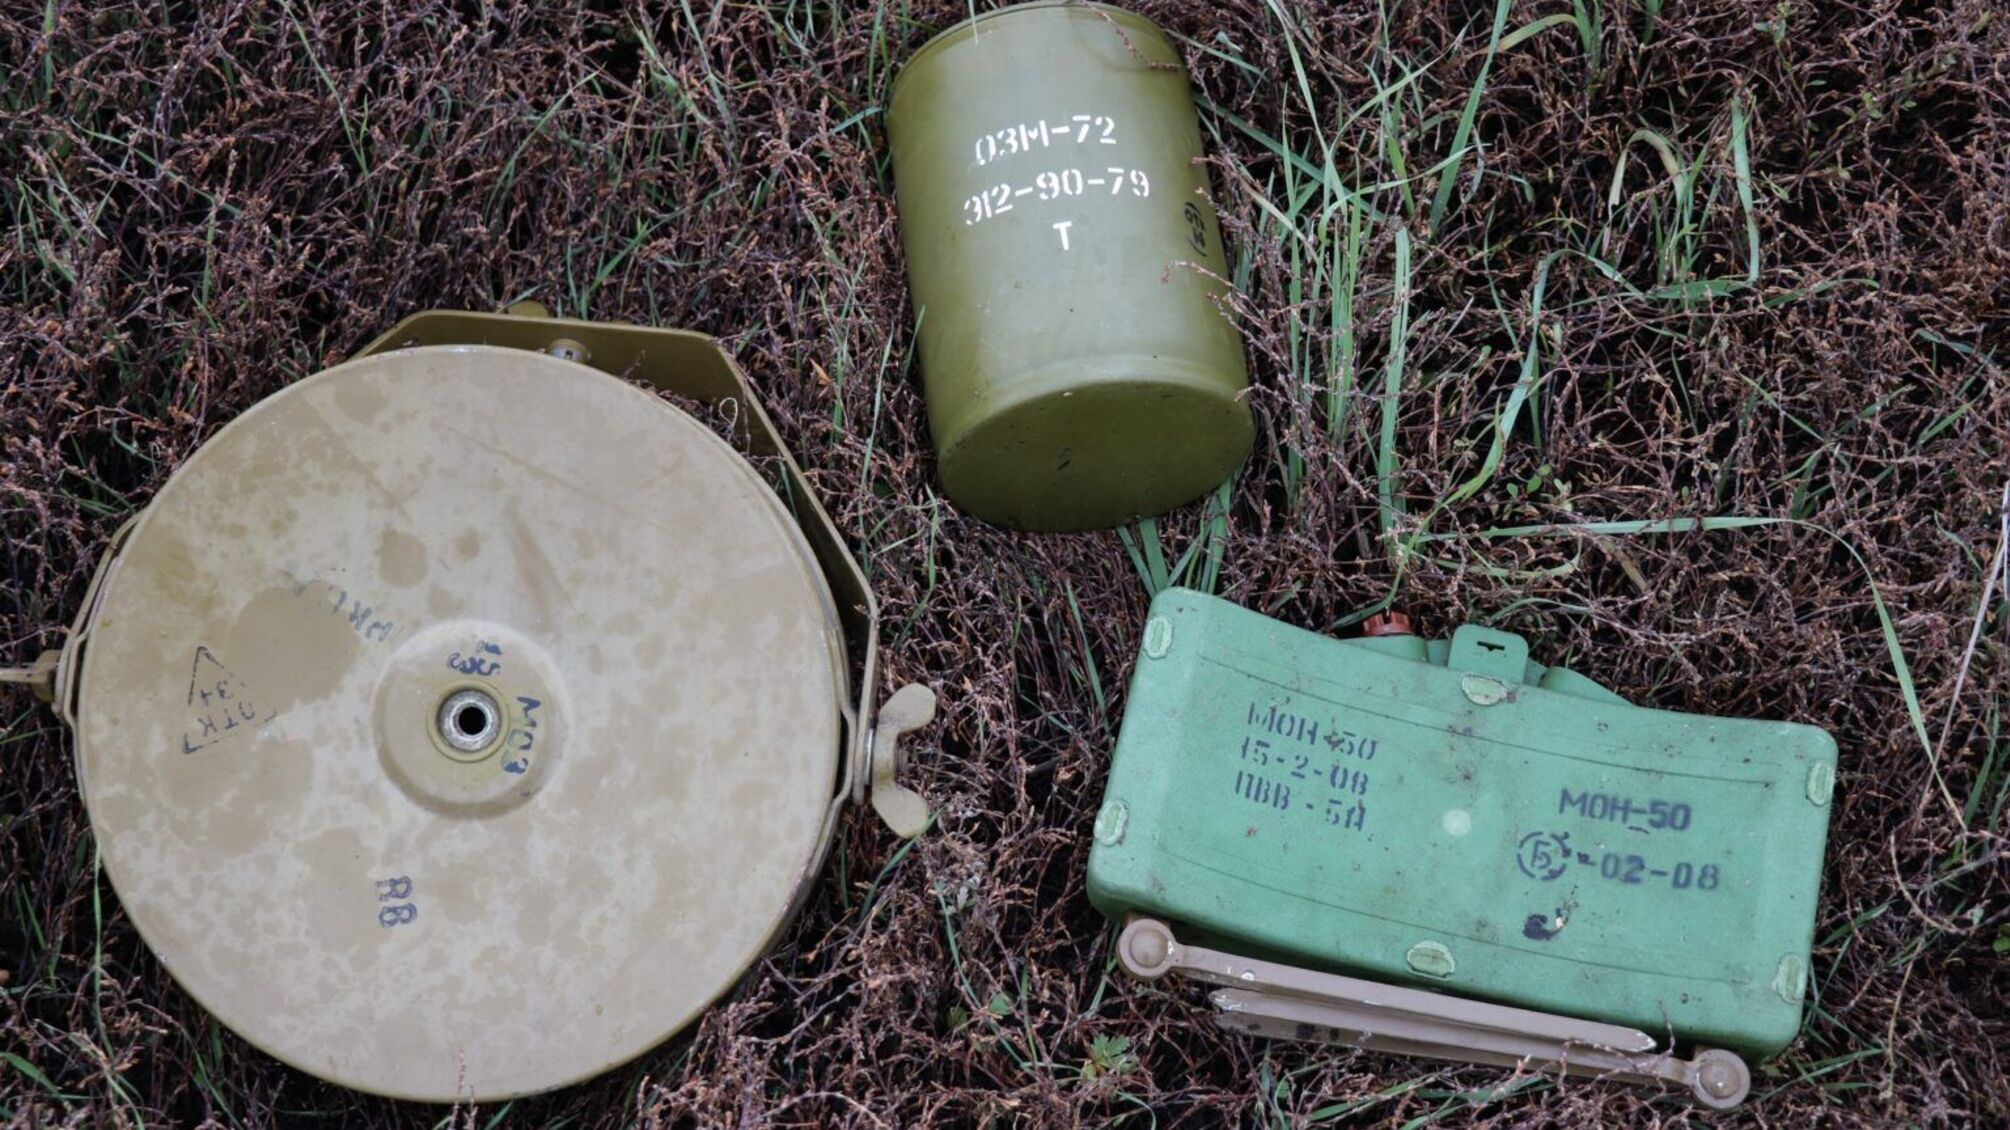 В Николаевской области мужчина принес домой противопехотные мины: произошел взрыв, есть погибшие